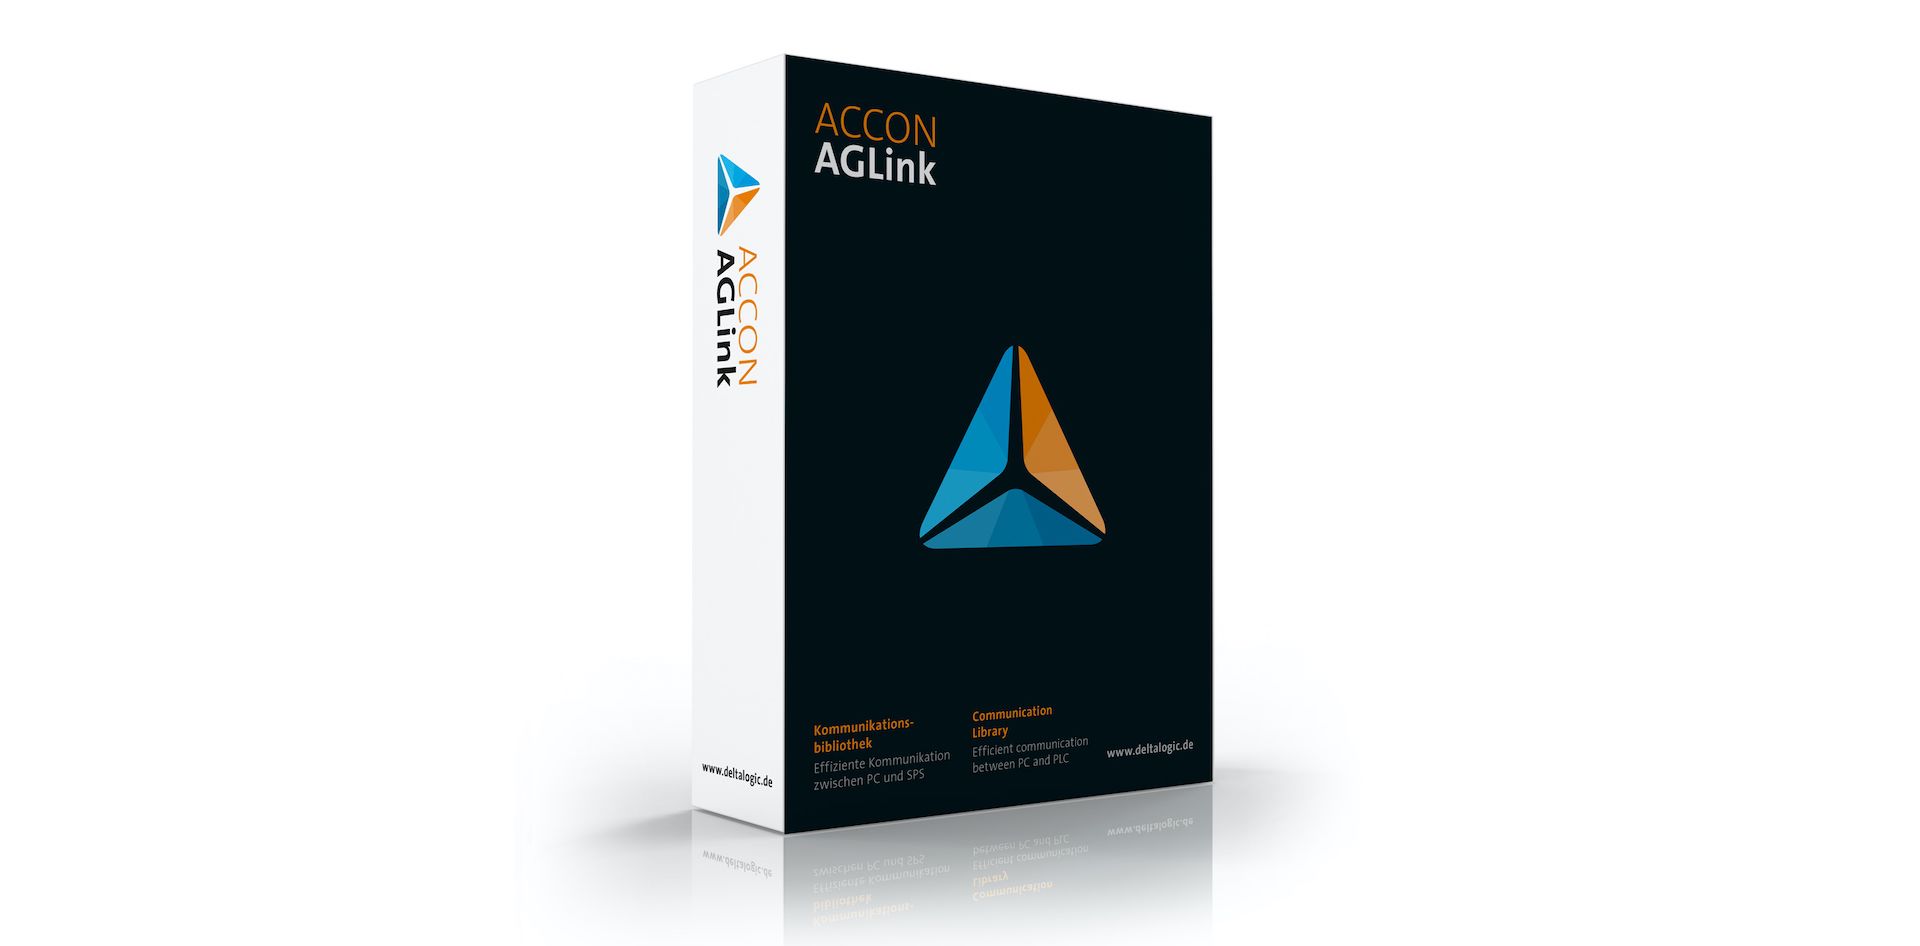 ACCON-AGLink 6.0 ist da!